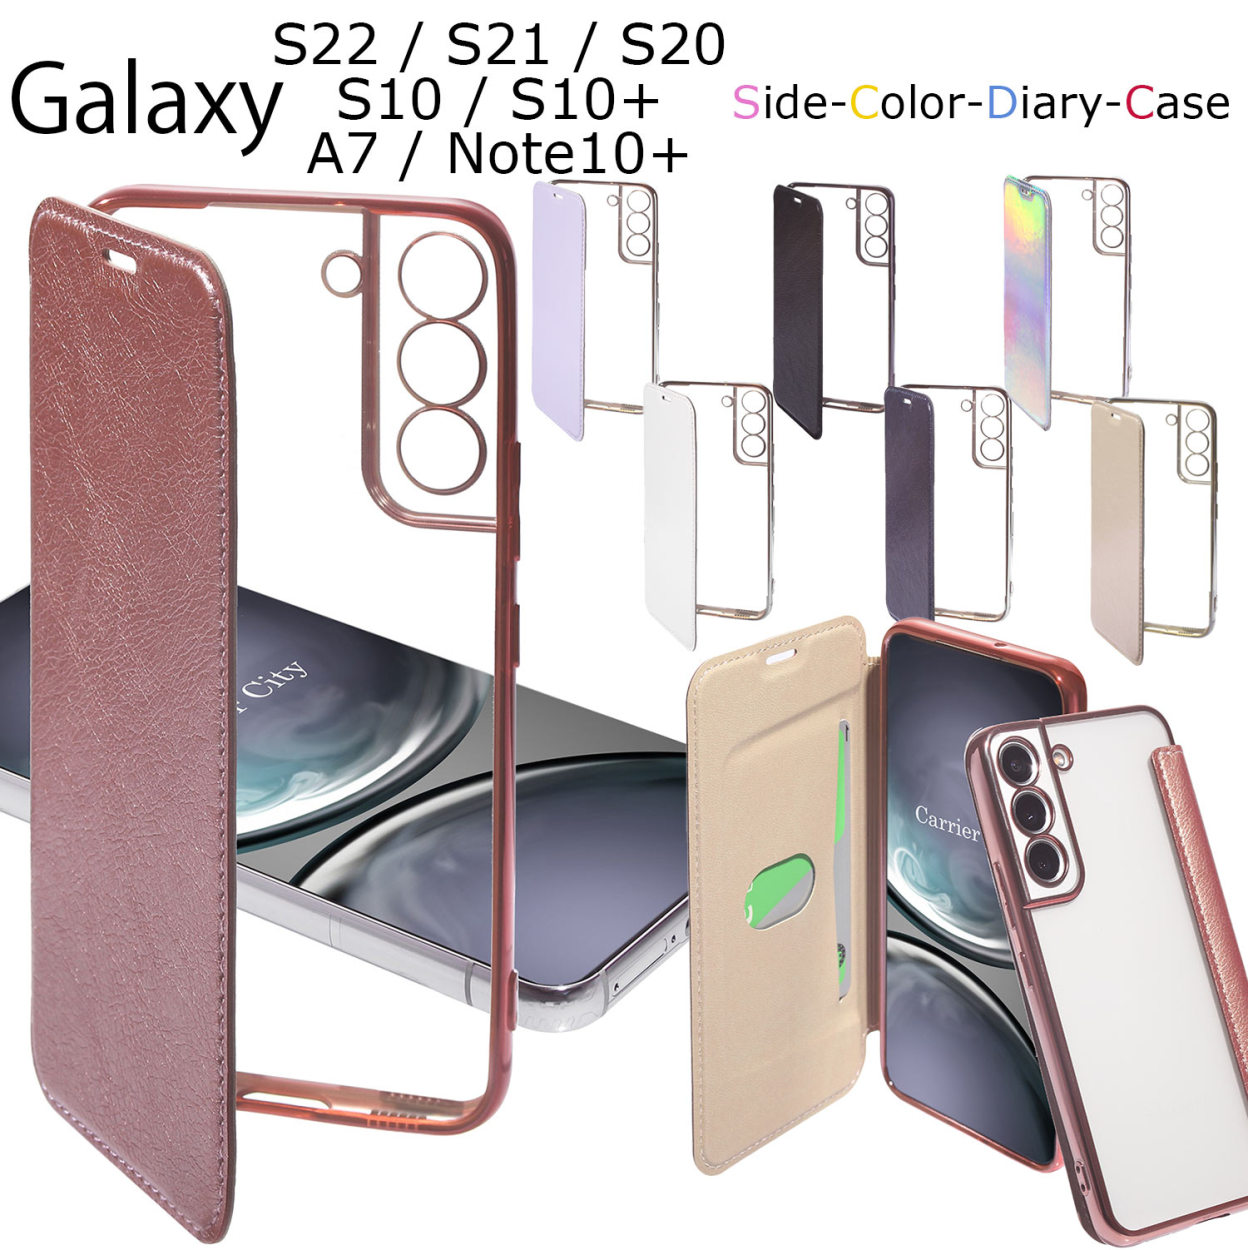 Galaxy S22 5G ケース 手帳型 GalaxyS21 5G galaxy S20 galaxy S10 galaxy A7 スマホケース  耐衝撃 サムスン ギャラクシー カバー 手帳 :galax-side-diary-case:Carrier-City 通販  